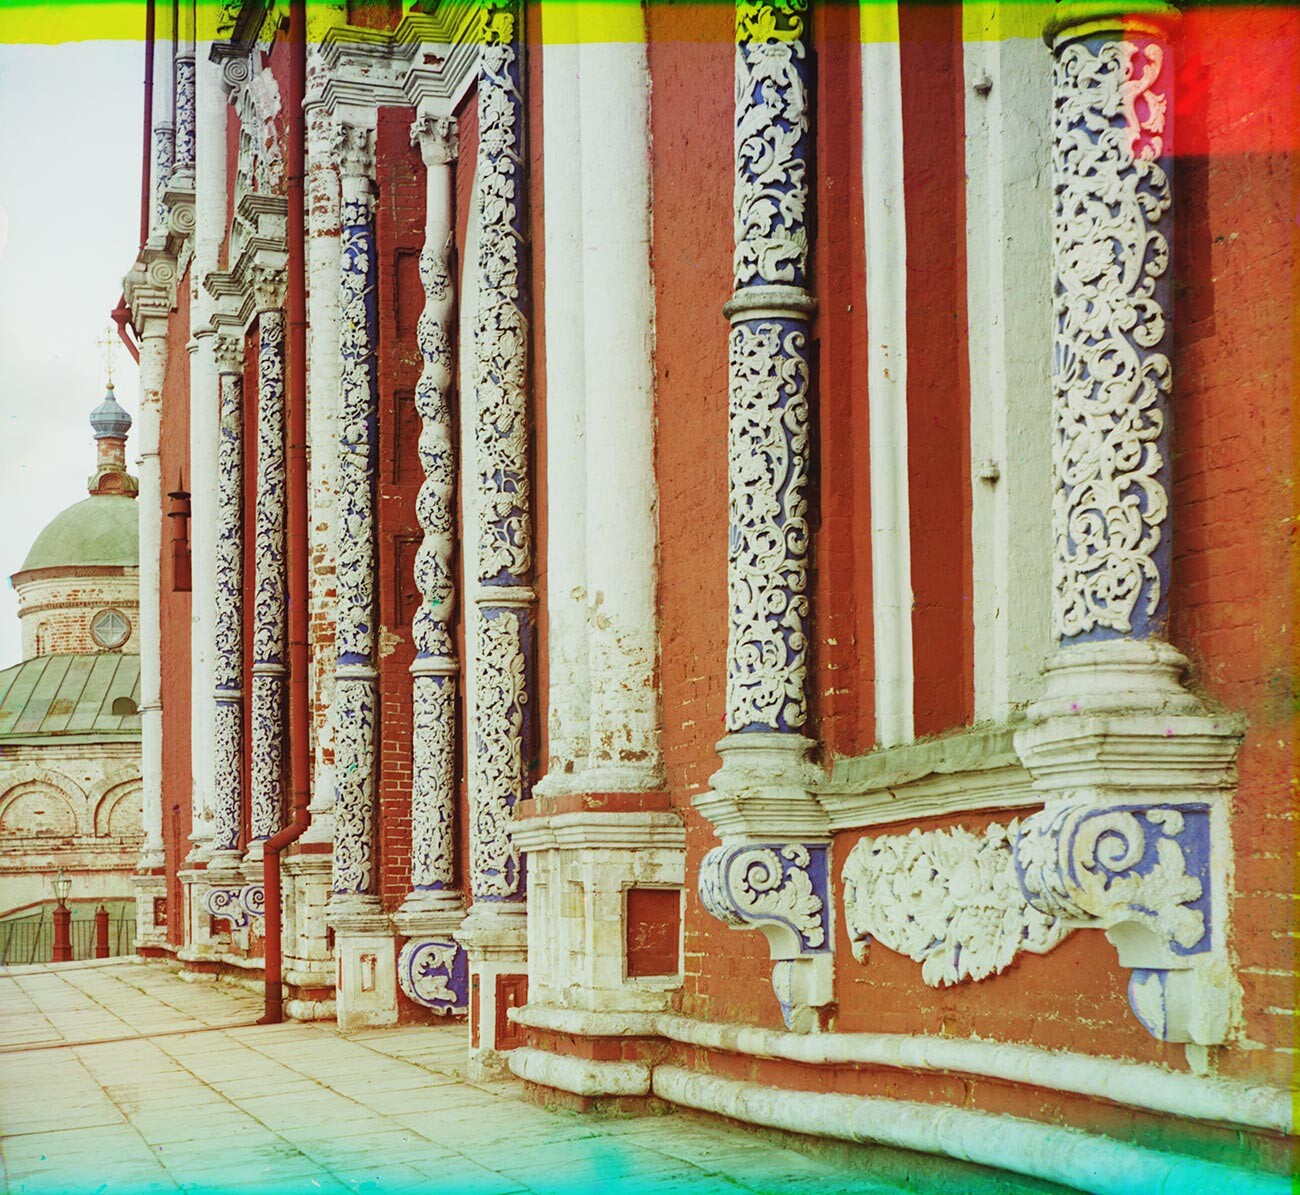 Kremlin de Riazan. Cathédrale de la Dormition-de-la-Vierge. Façade nord avec colonnes en pierre calcaire sculptée